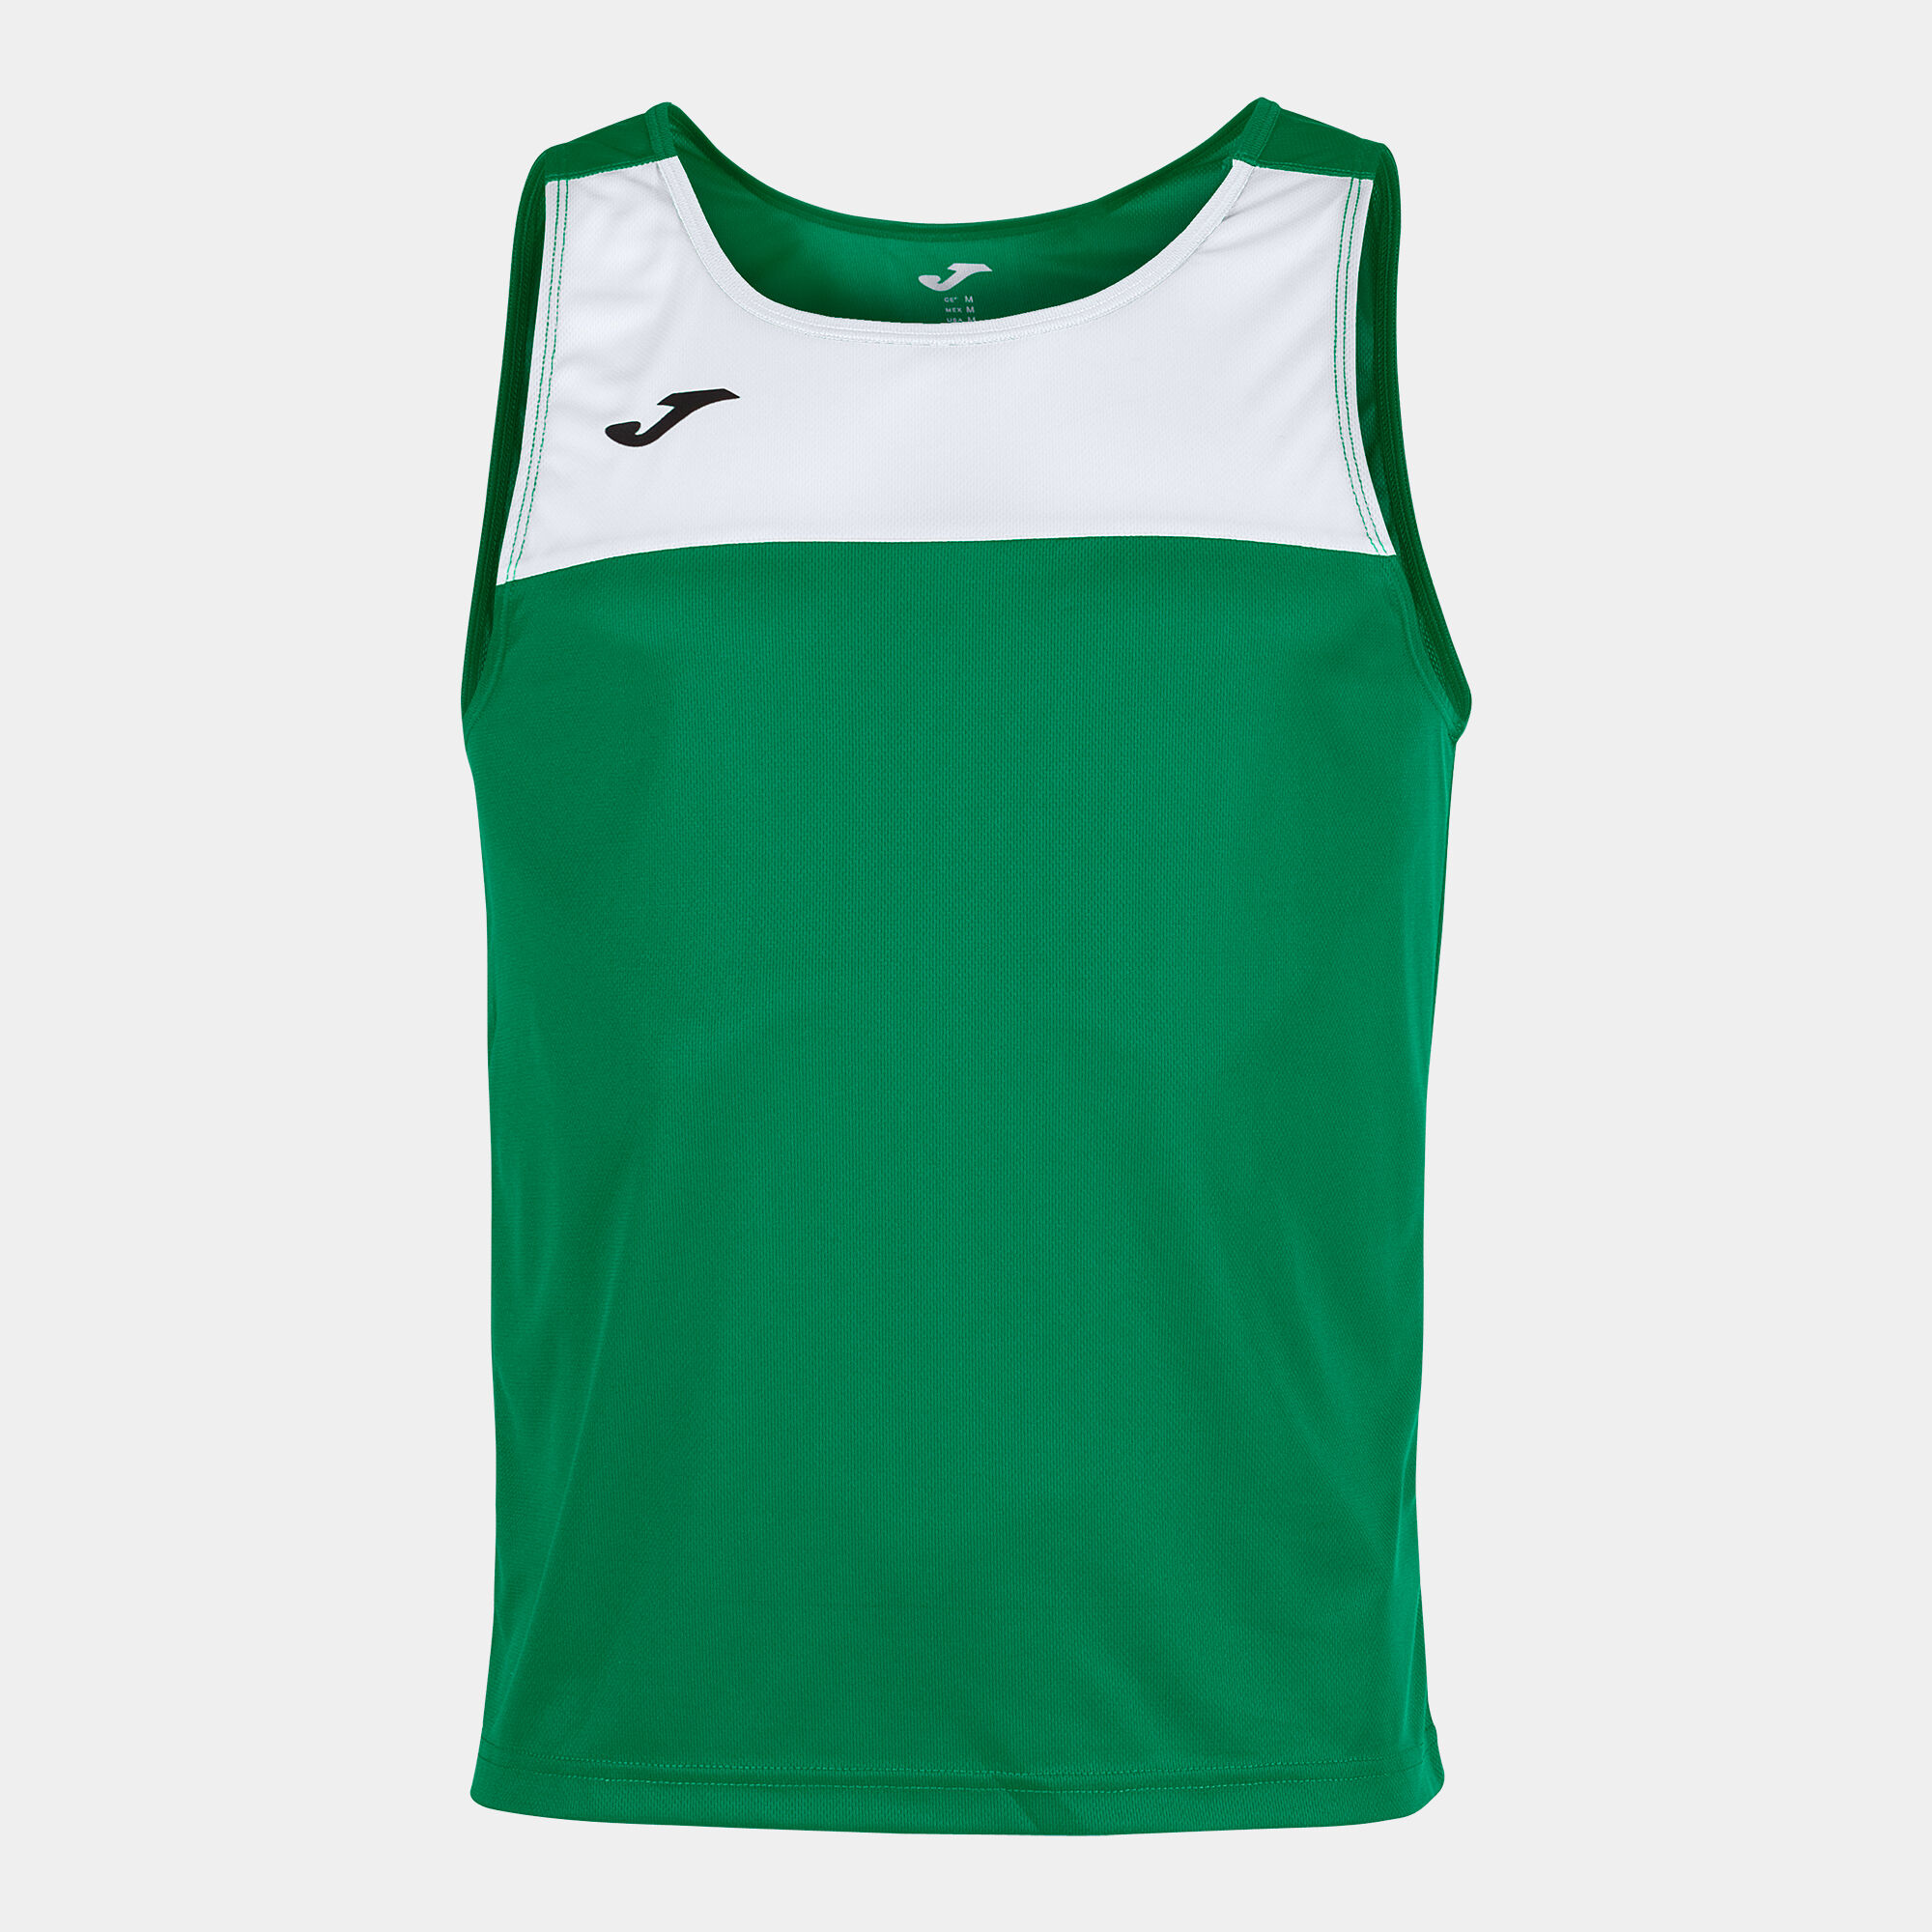 Shirt s/m mann Race grün weiß